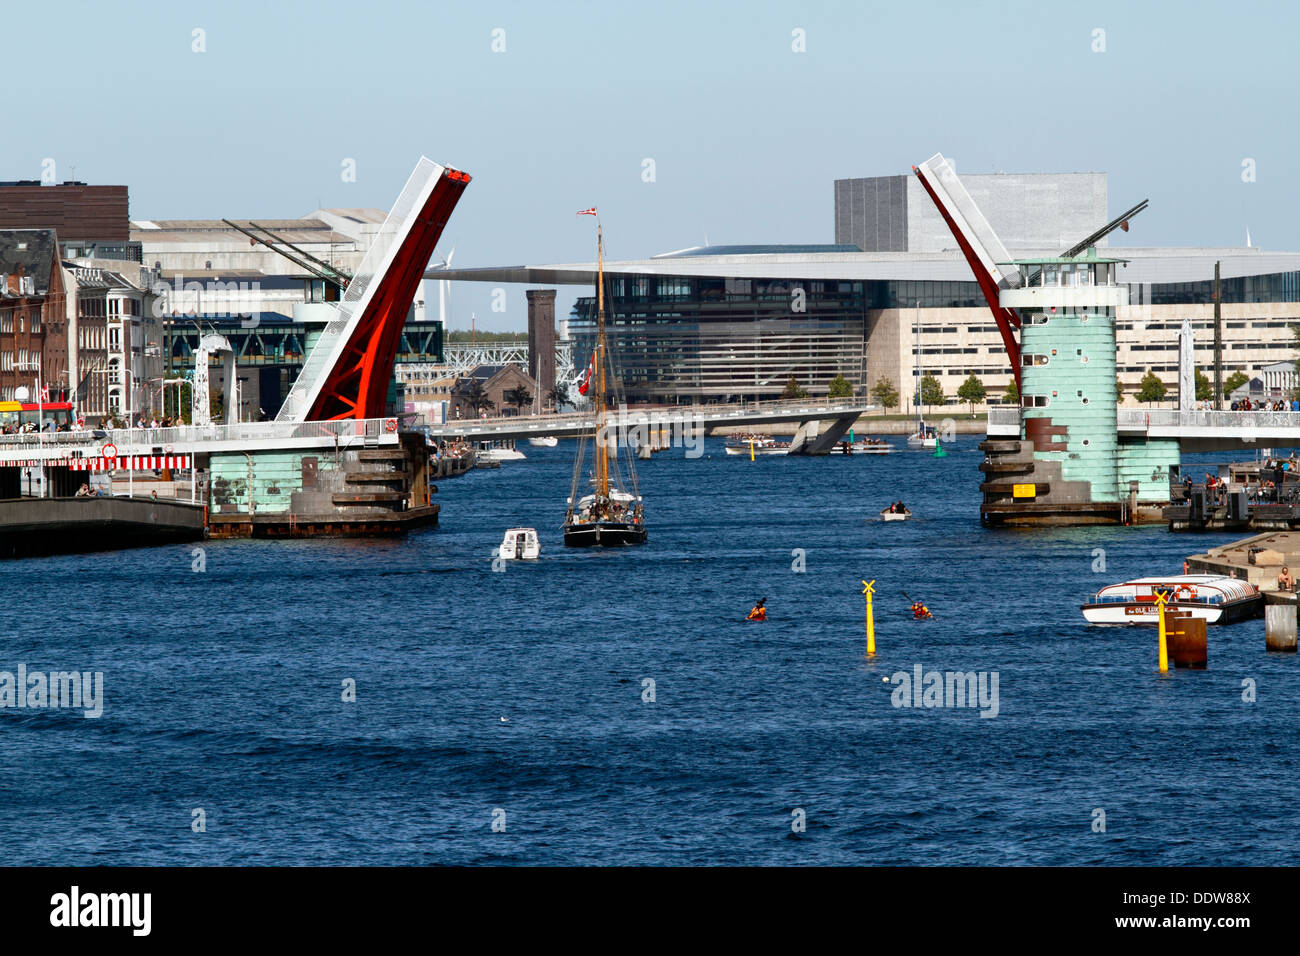 Die Galeassen Anne Marie durchläuft die offene Knippelsbro Brücke im Hafen von Kopenhagen. Das Royal Opera House im Hintergrund. Kopenhagen, Dänemark. Stockfoto